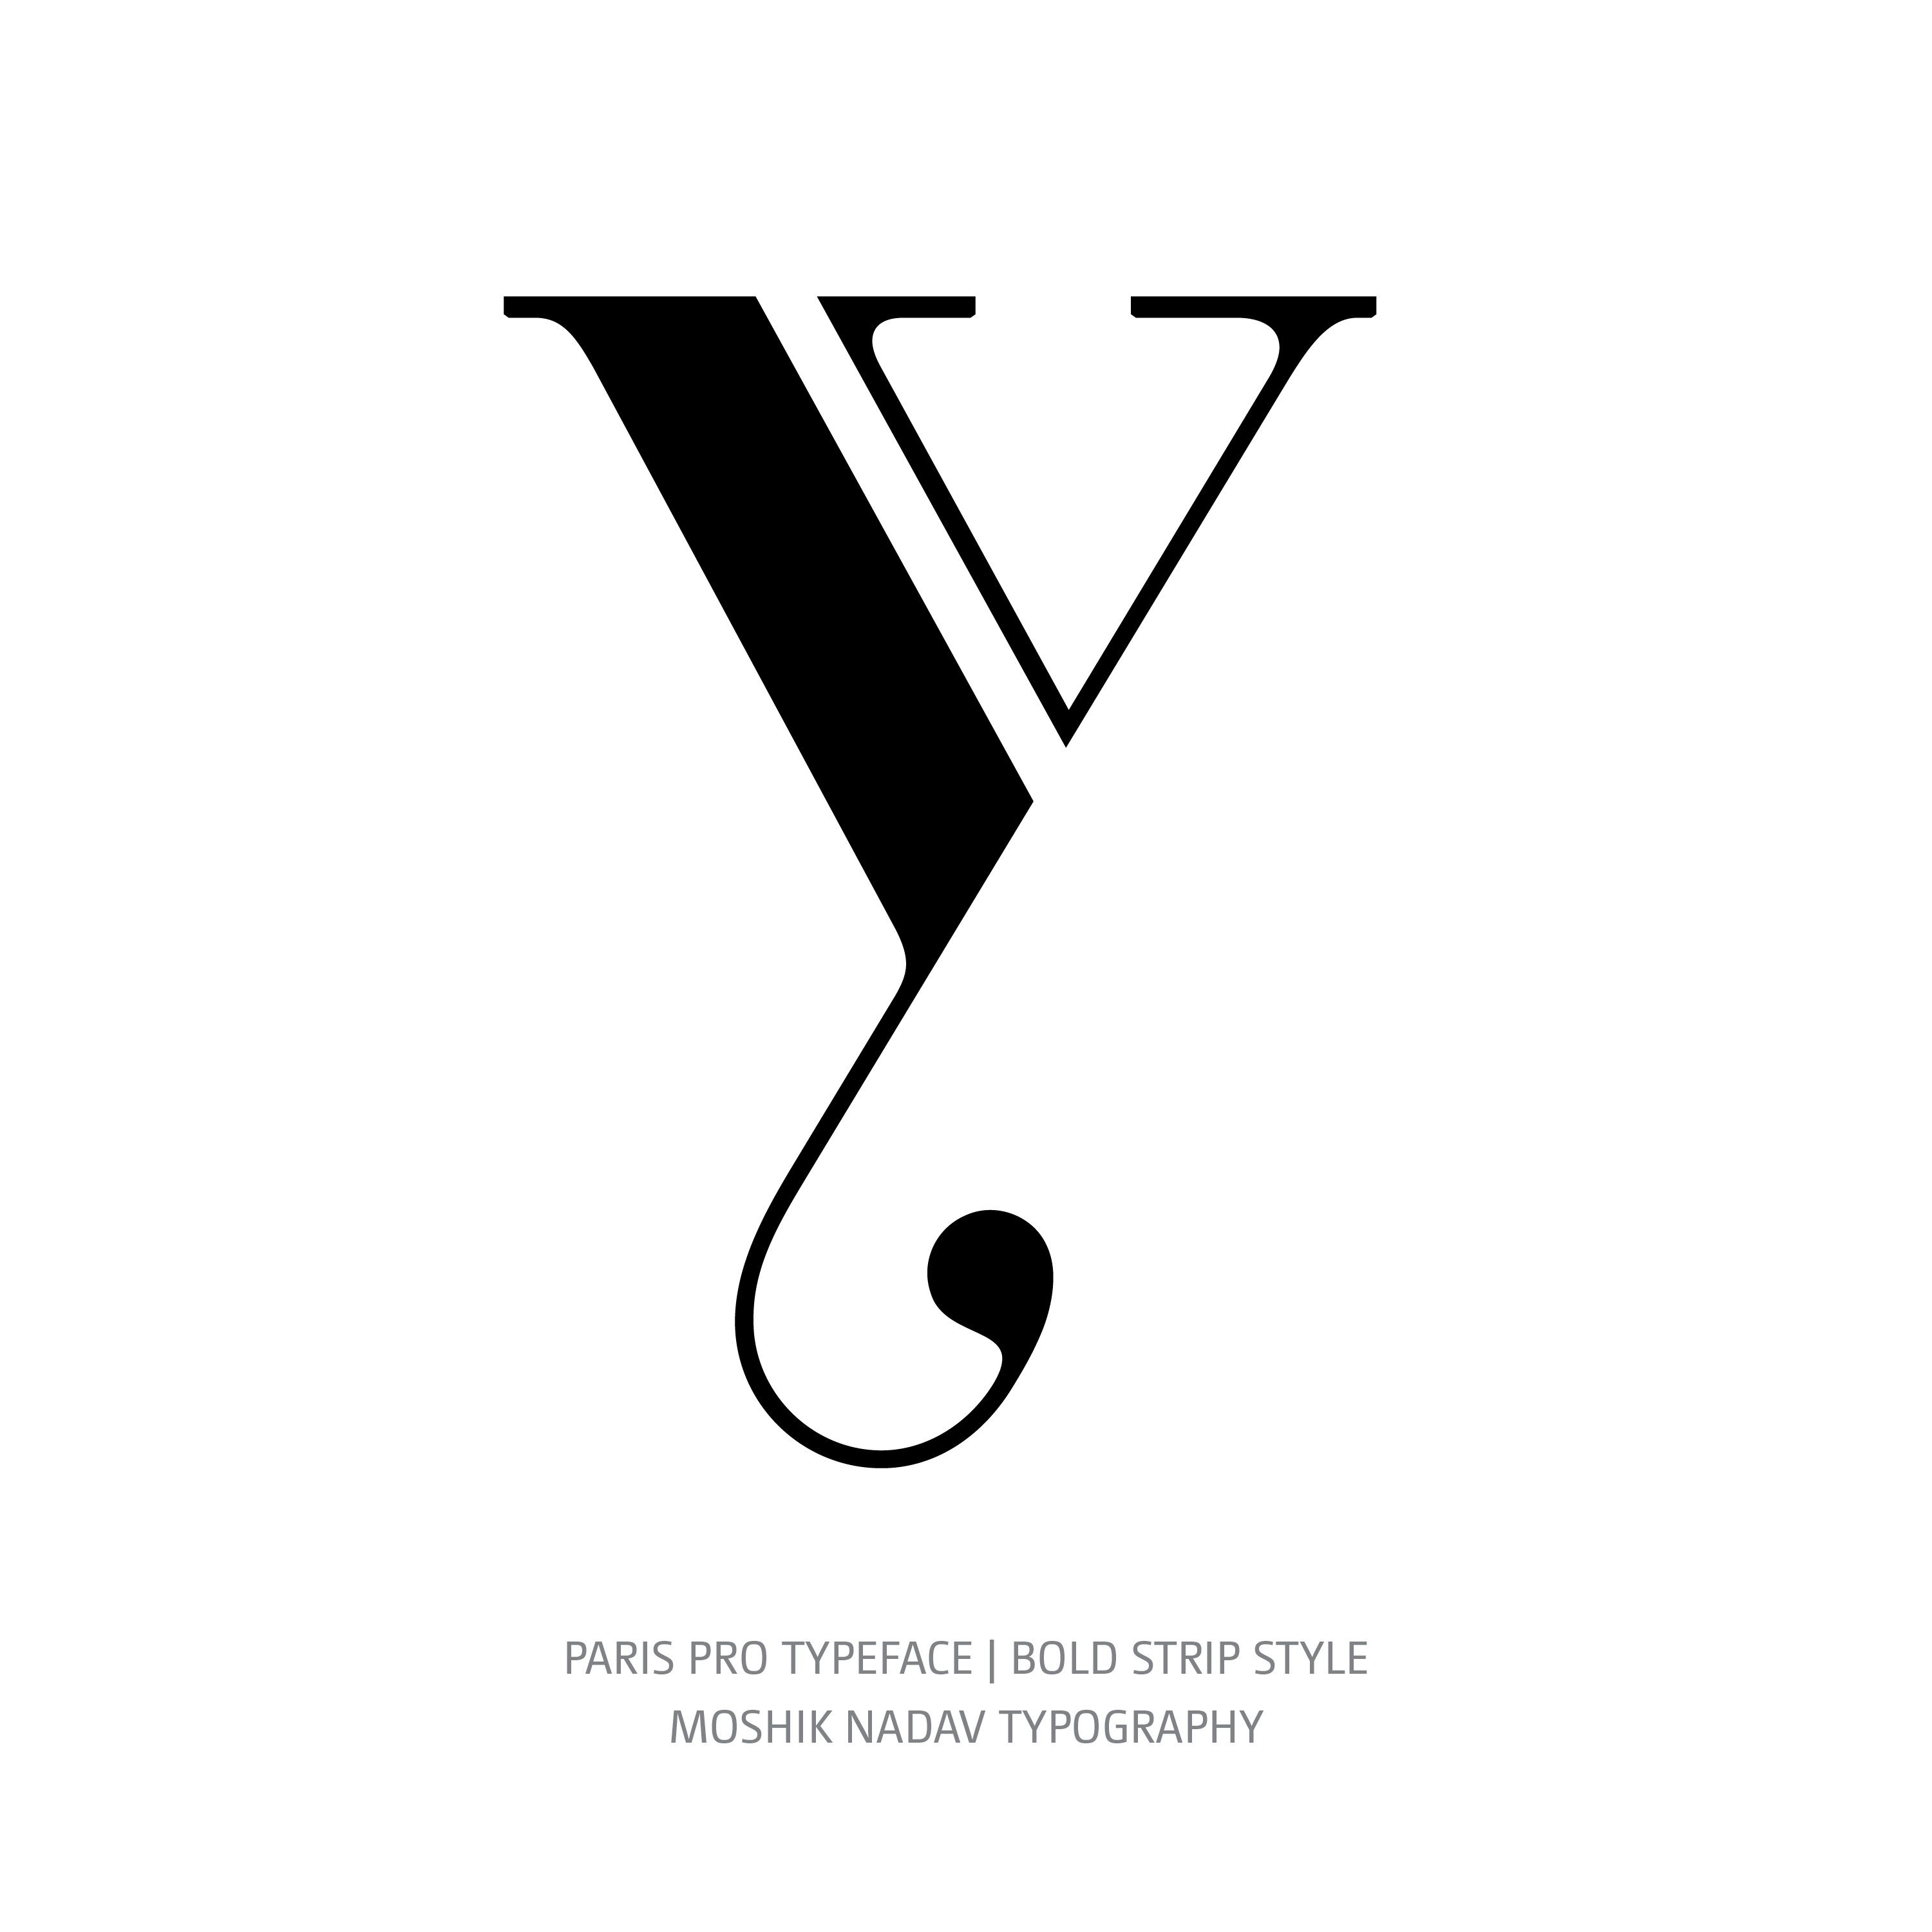 Paris Pro Typeface Bold Strip y